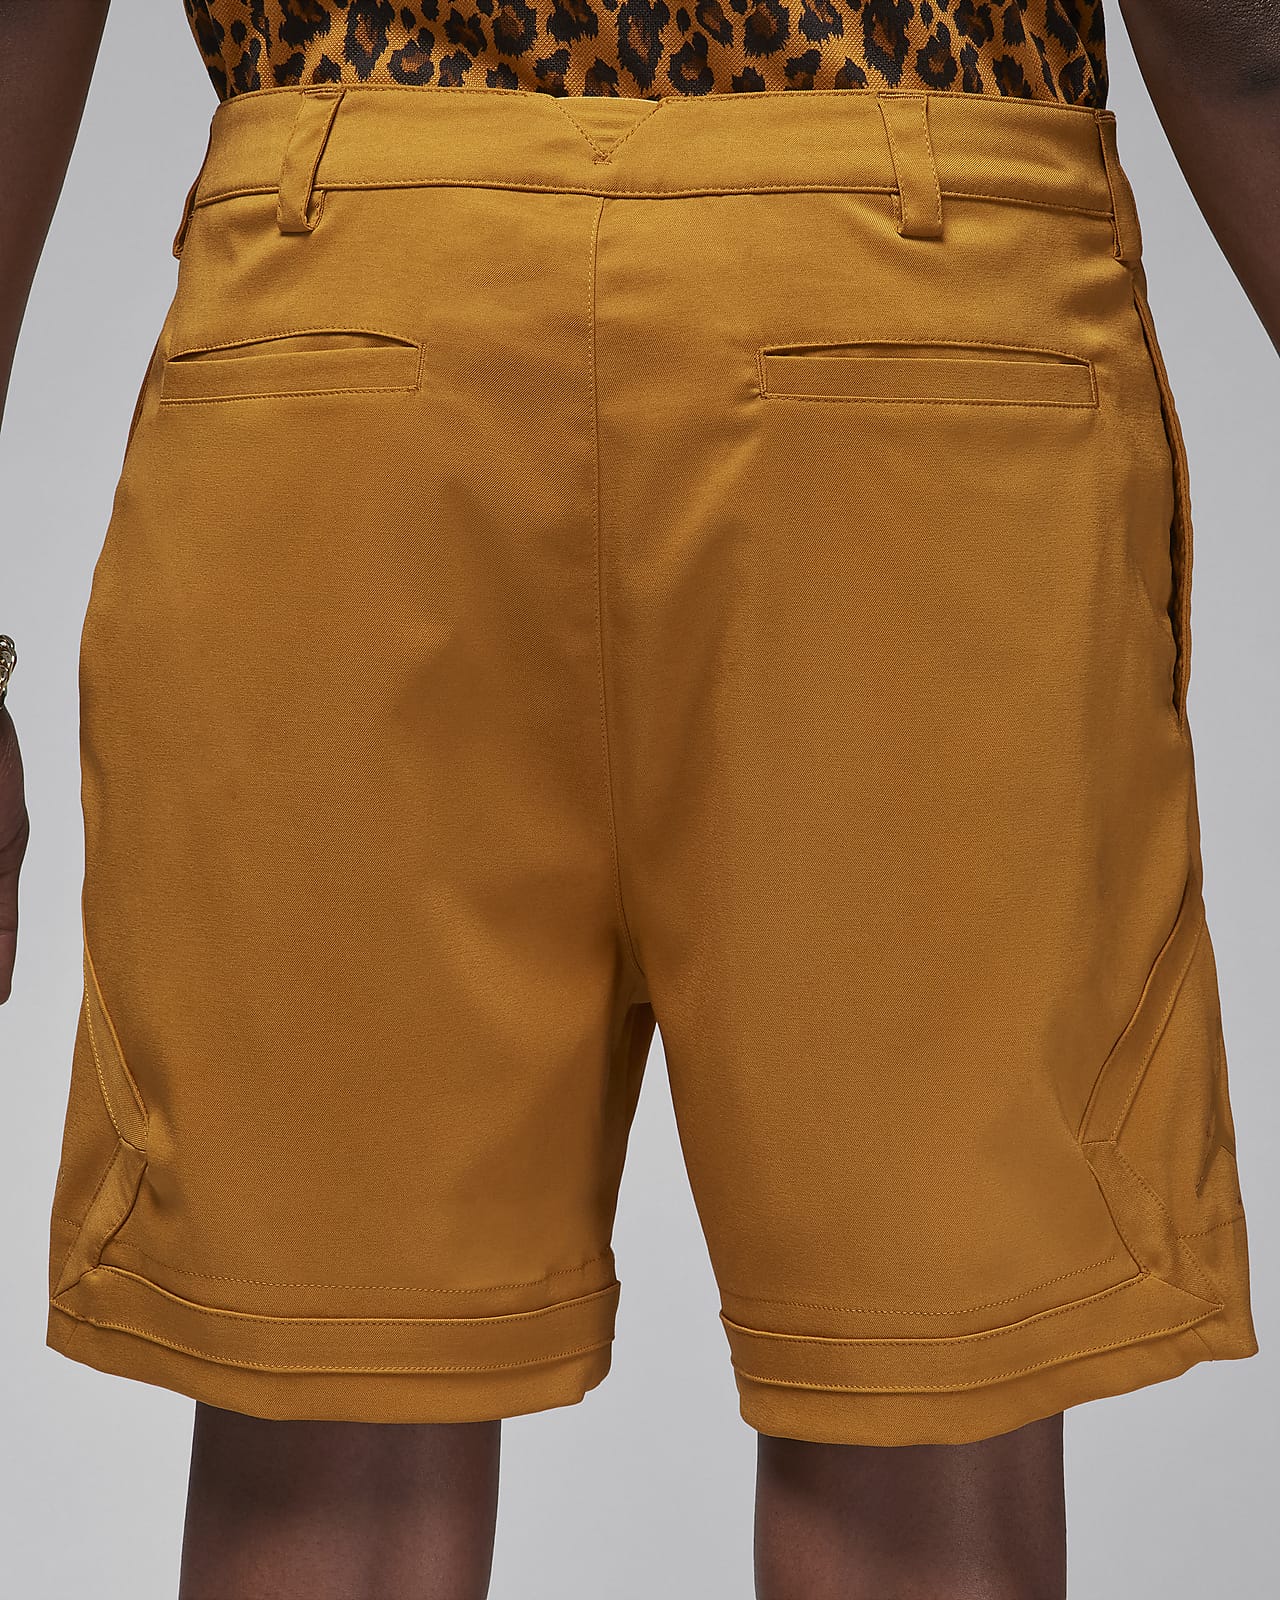 Men's Brown Shorts. Nike CA